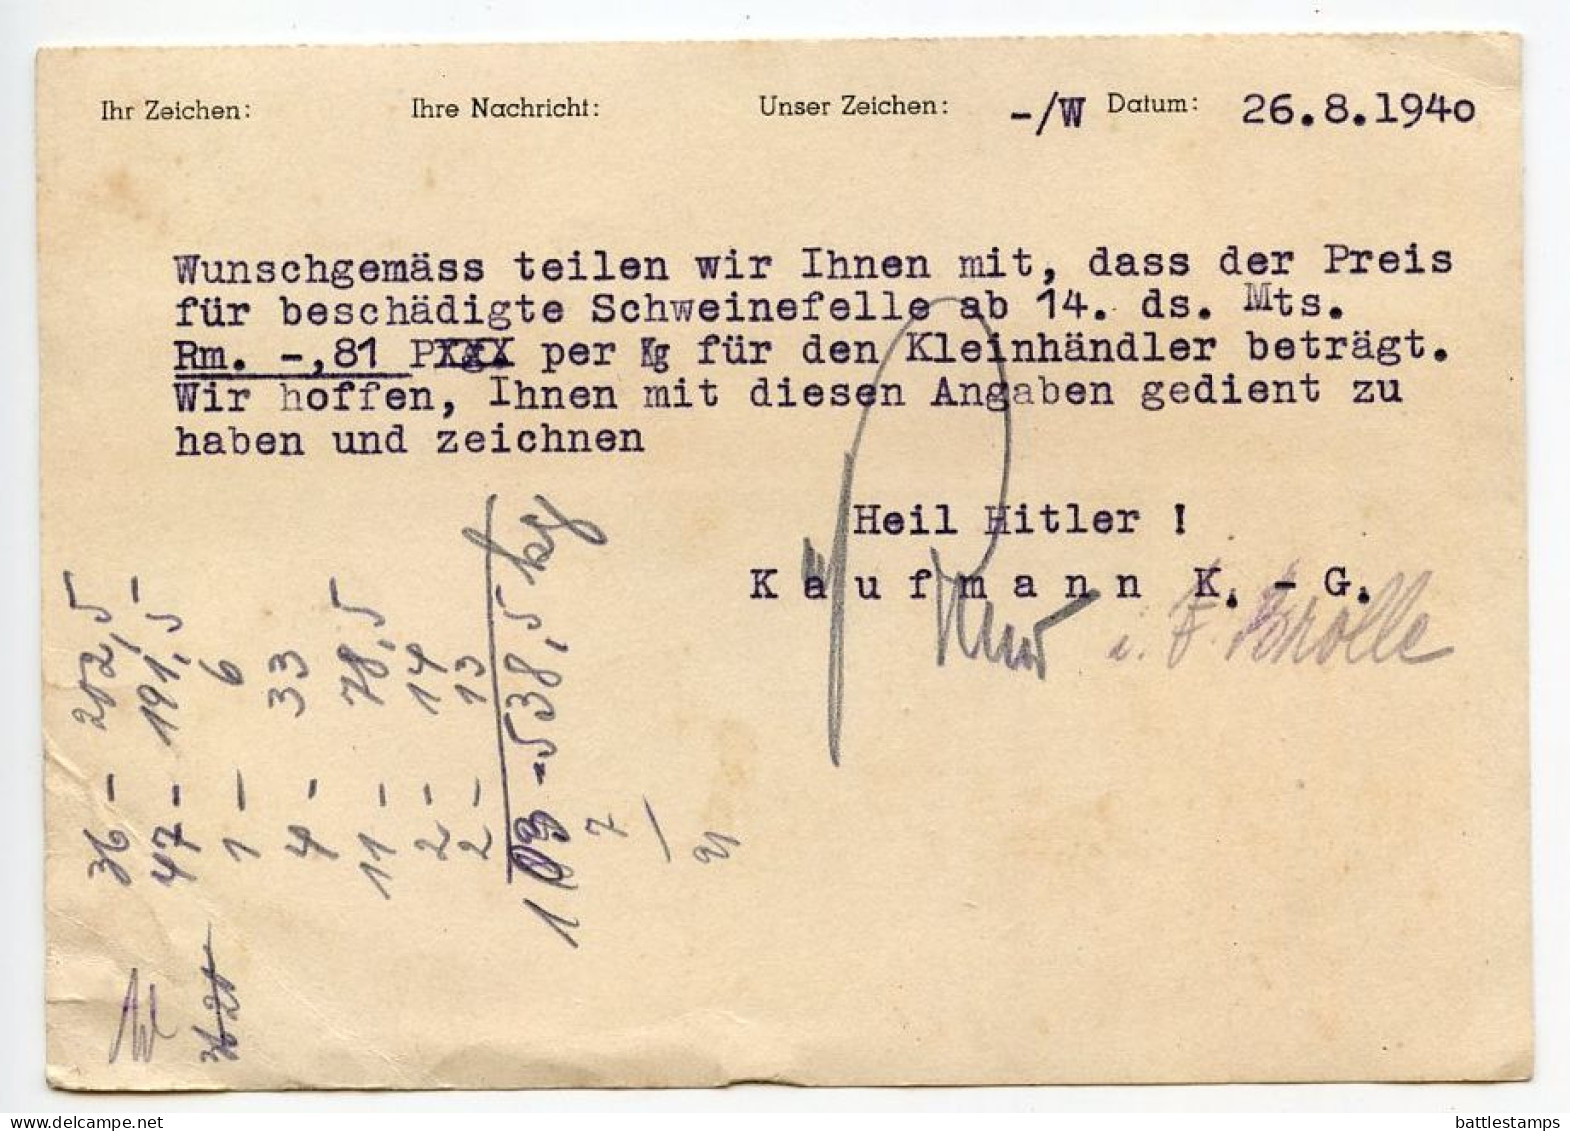 Germany 1940 Postcard; Mülheim (Ruhr) - Kaufmann K.-G. To Schiplage; 6pf. Meter With Slogan - Maschinenstempel (EMA)